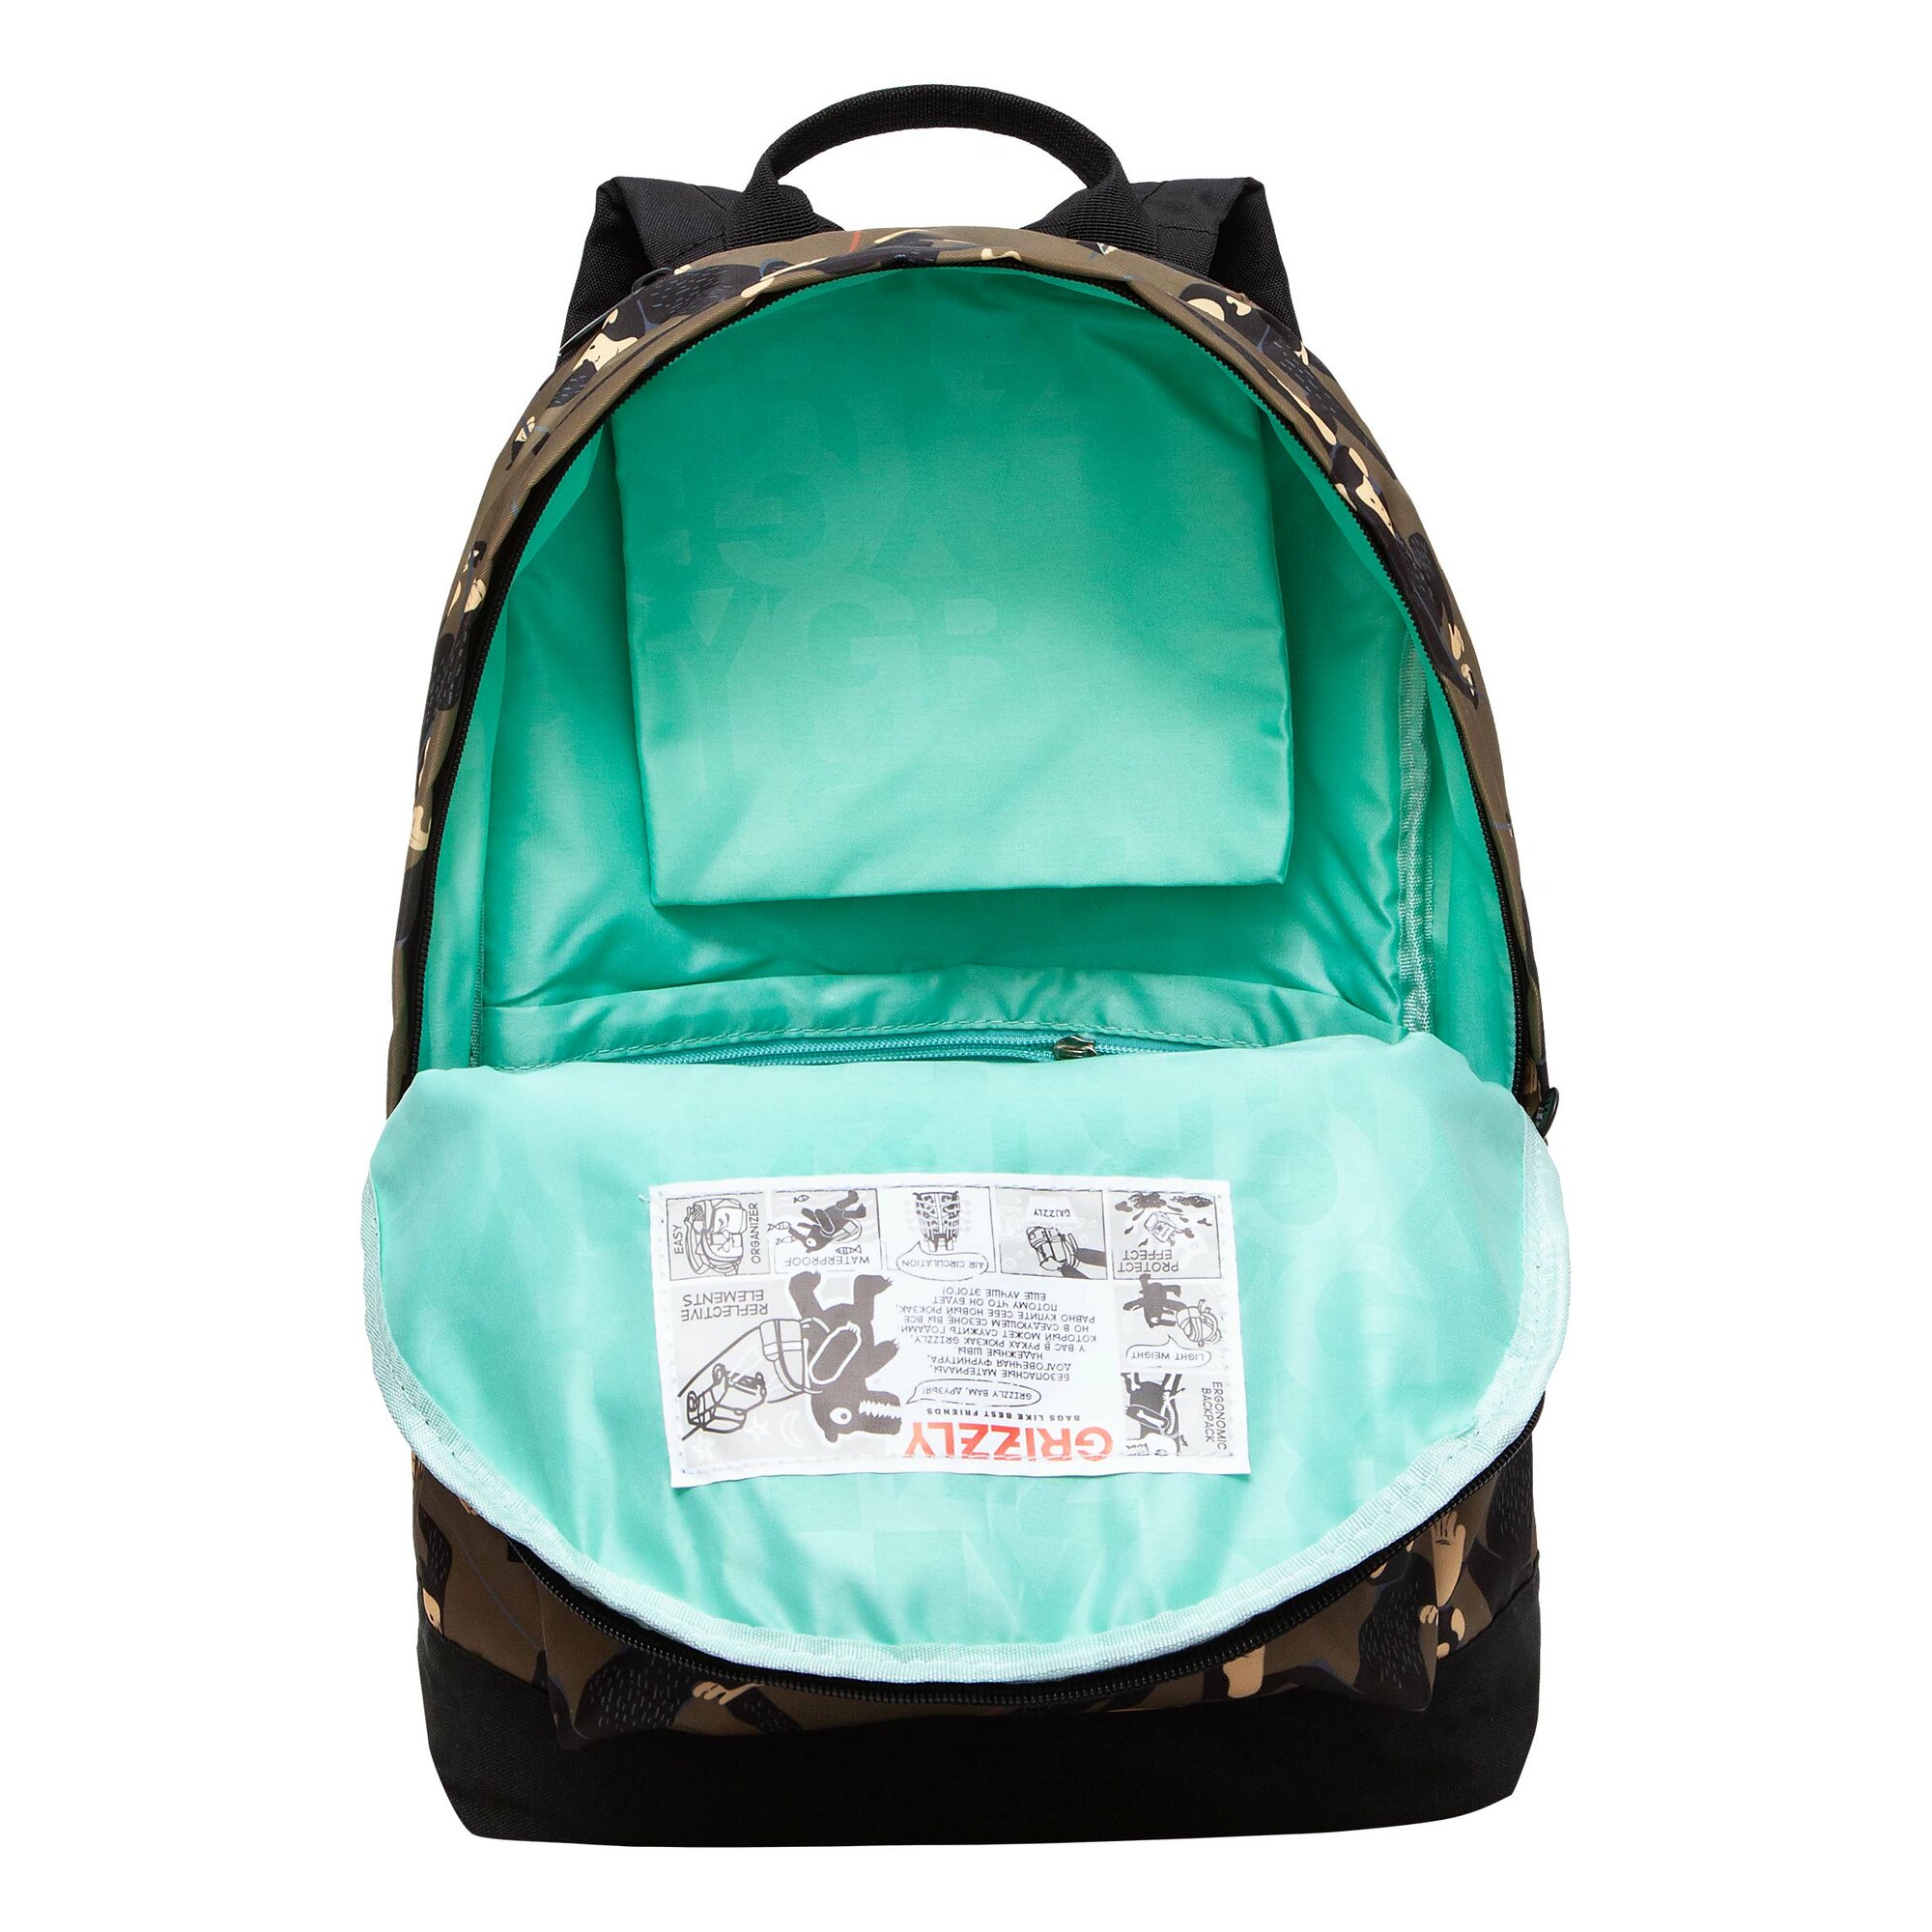 Легкий рюкзак городской GRIZZLY с карманом для ноутбука 13", одним отделением, размер L, женский RXL-322-9/1